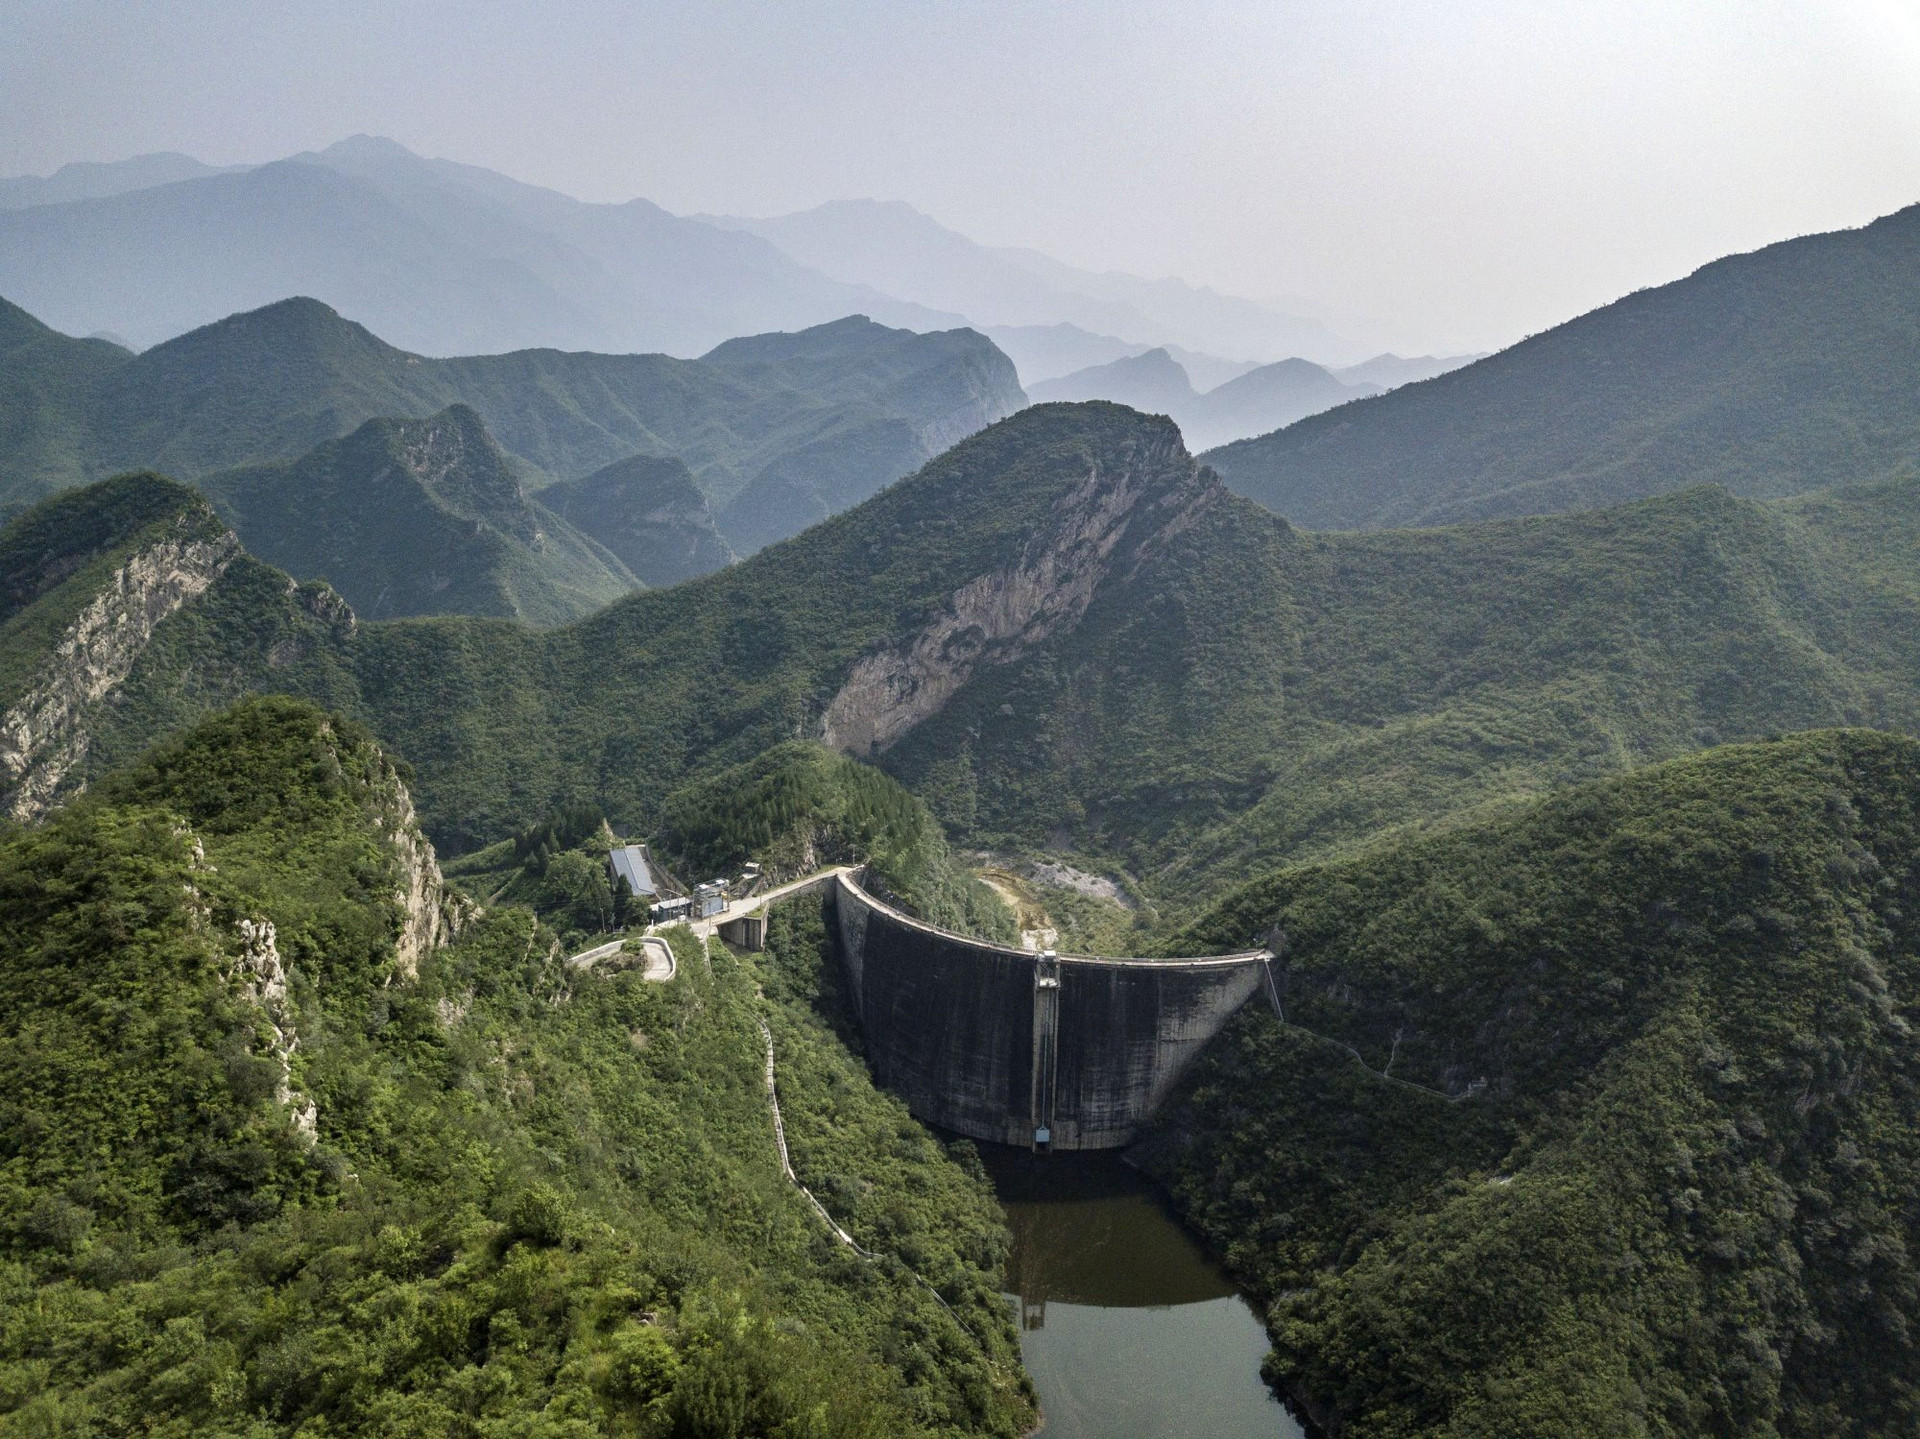 Trung Quốc “mệt nhoài” vì xây đập thuỷ điện: Sở hữu 98.000 con đập nhưng từng muốn phá bỏ gần nửa, nhiều nhà máy im lìm khi các dòng sông trơ đáy - Ảnh 2.